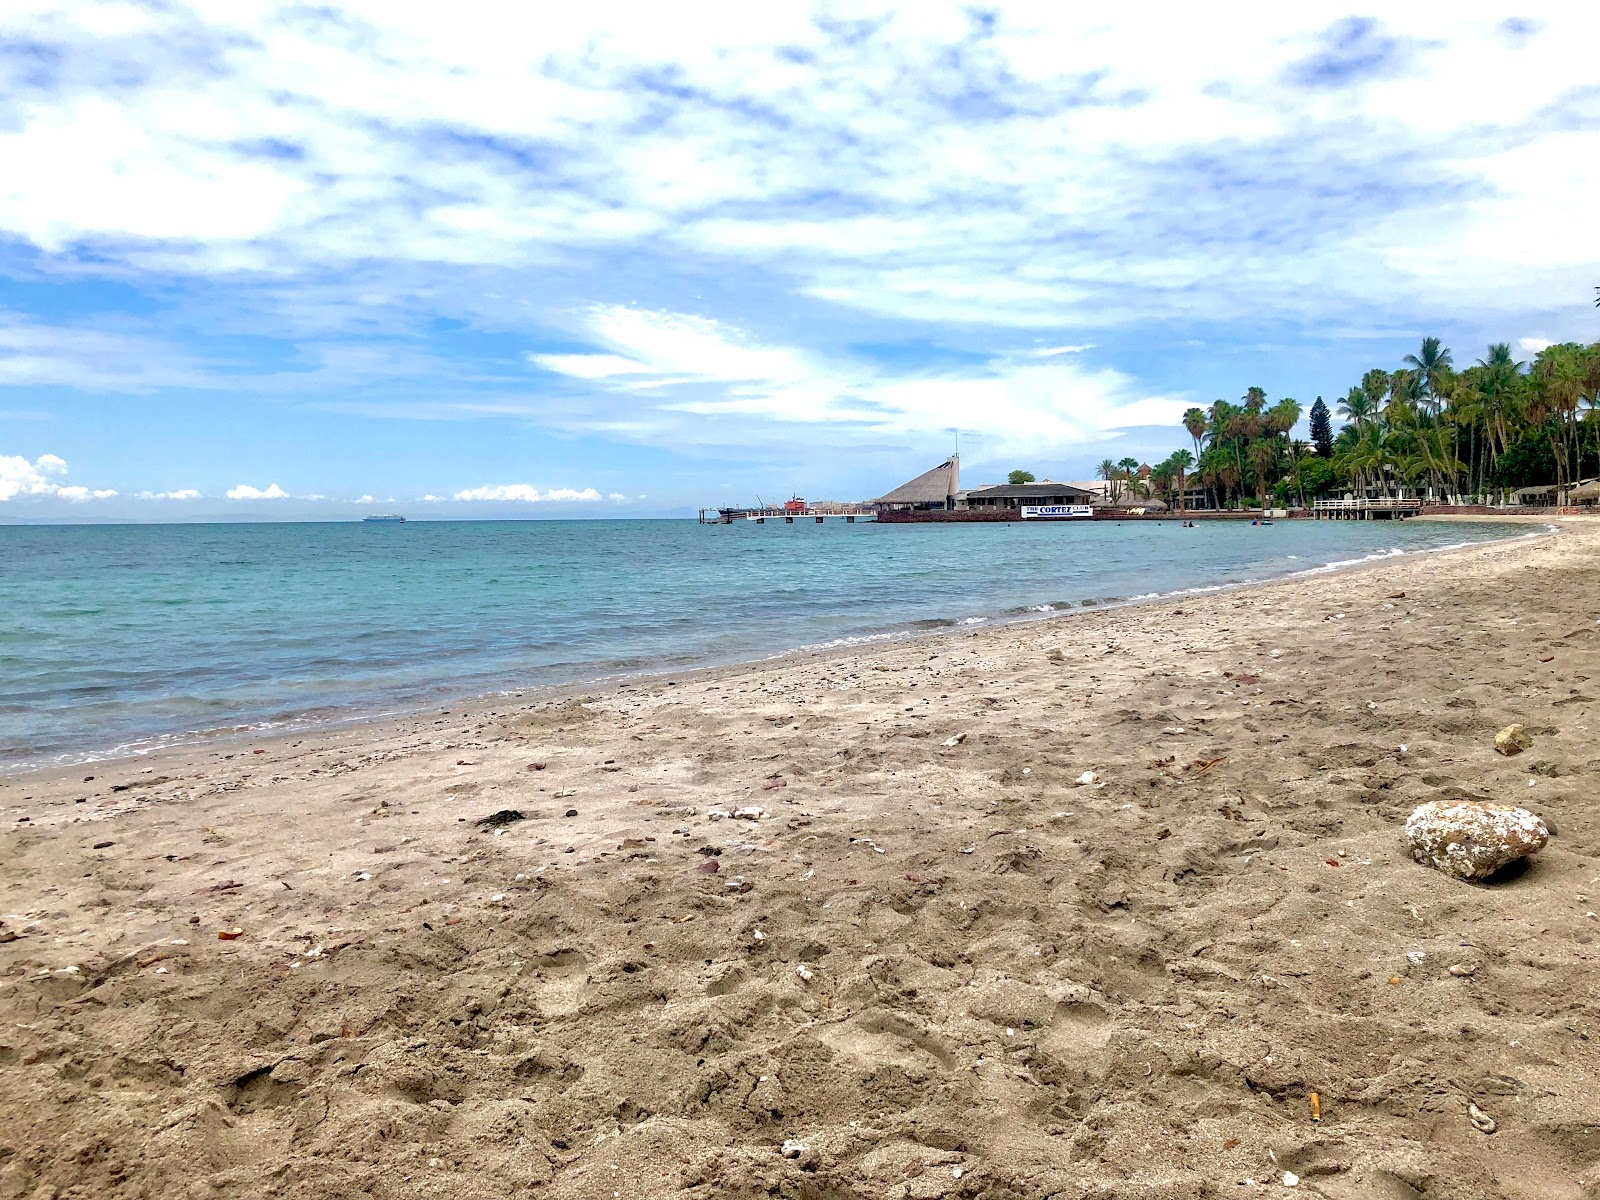 Fotografie cu Playa La Concha - locul popular printre cunoscătorii de relaxare